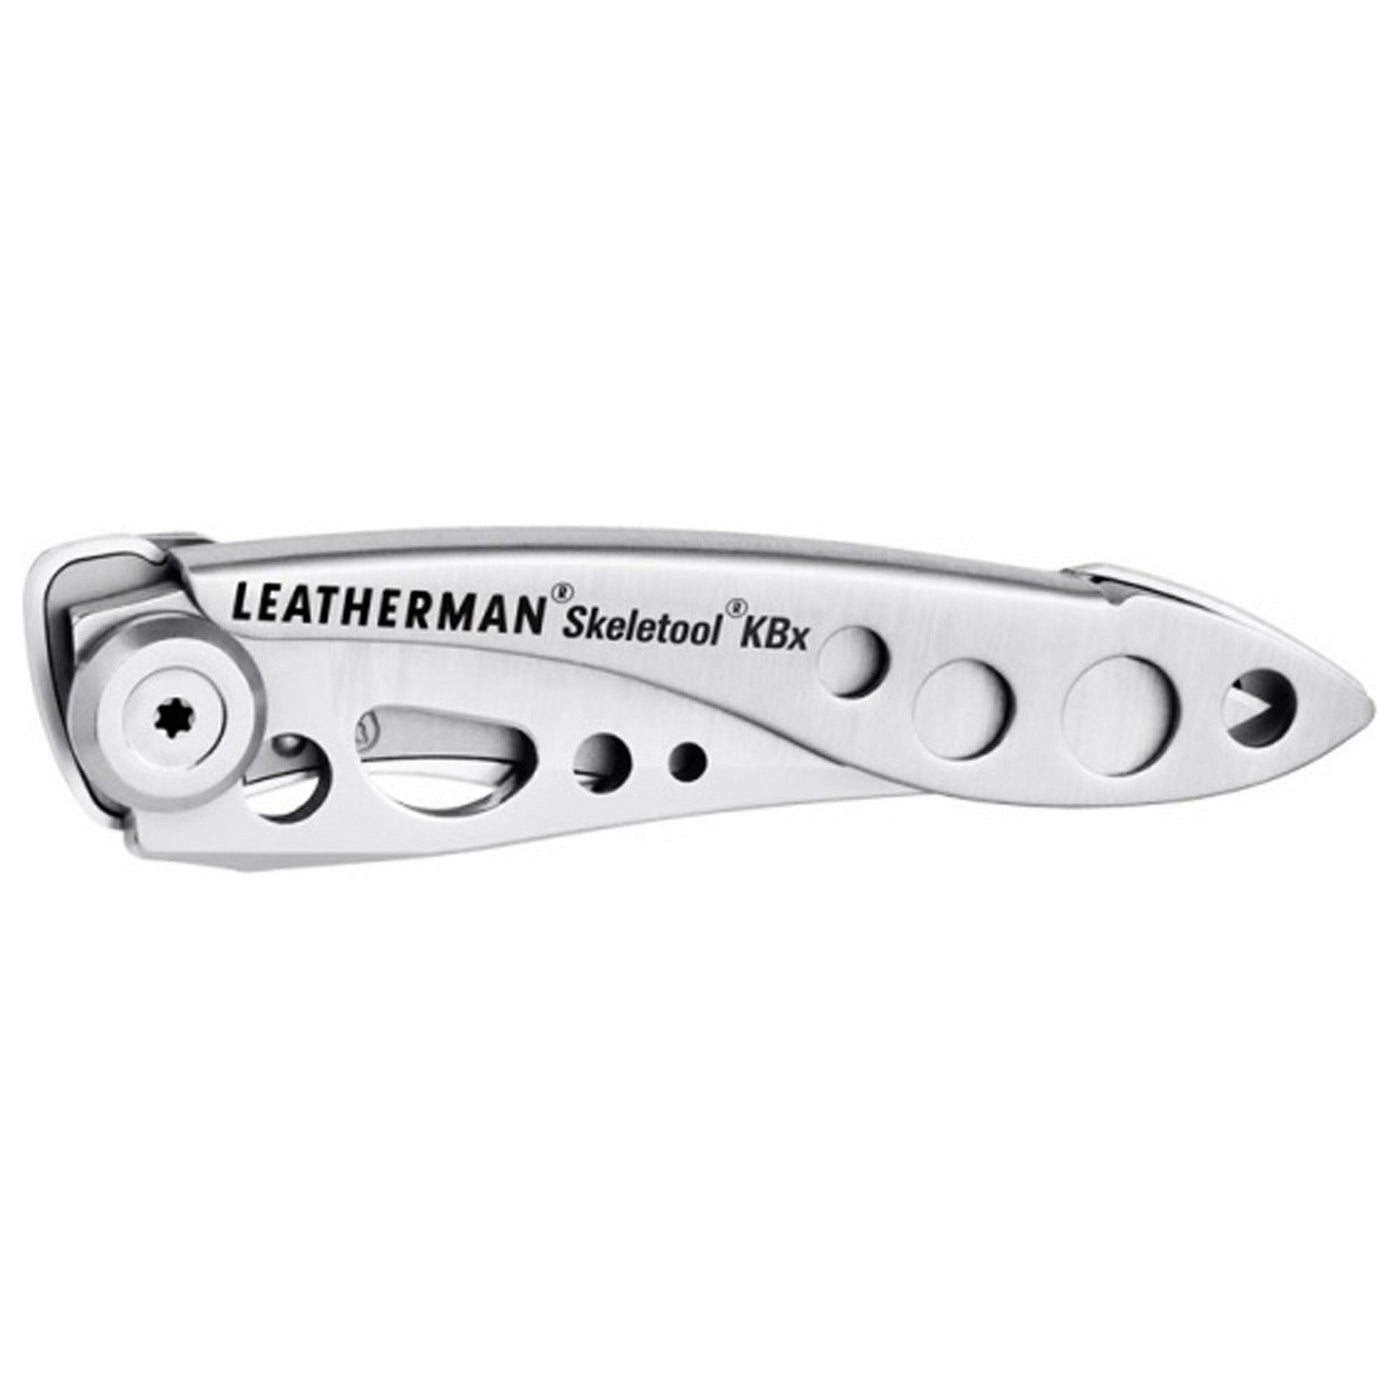 Leatherman Skeletool KBx Knife